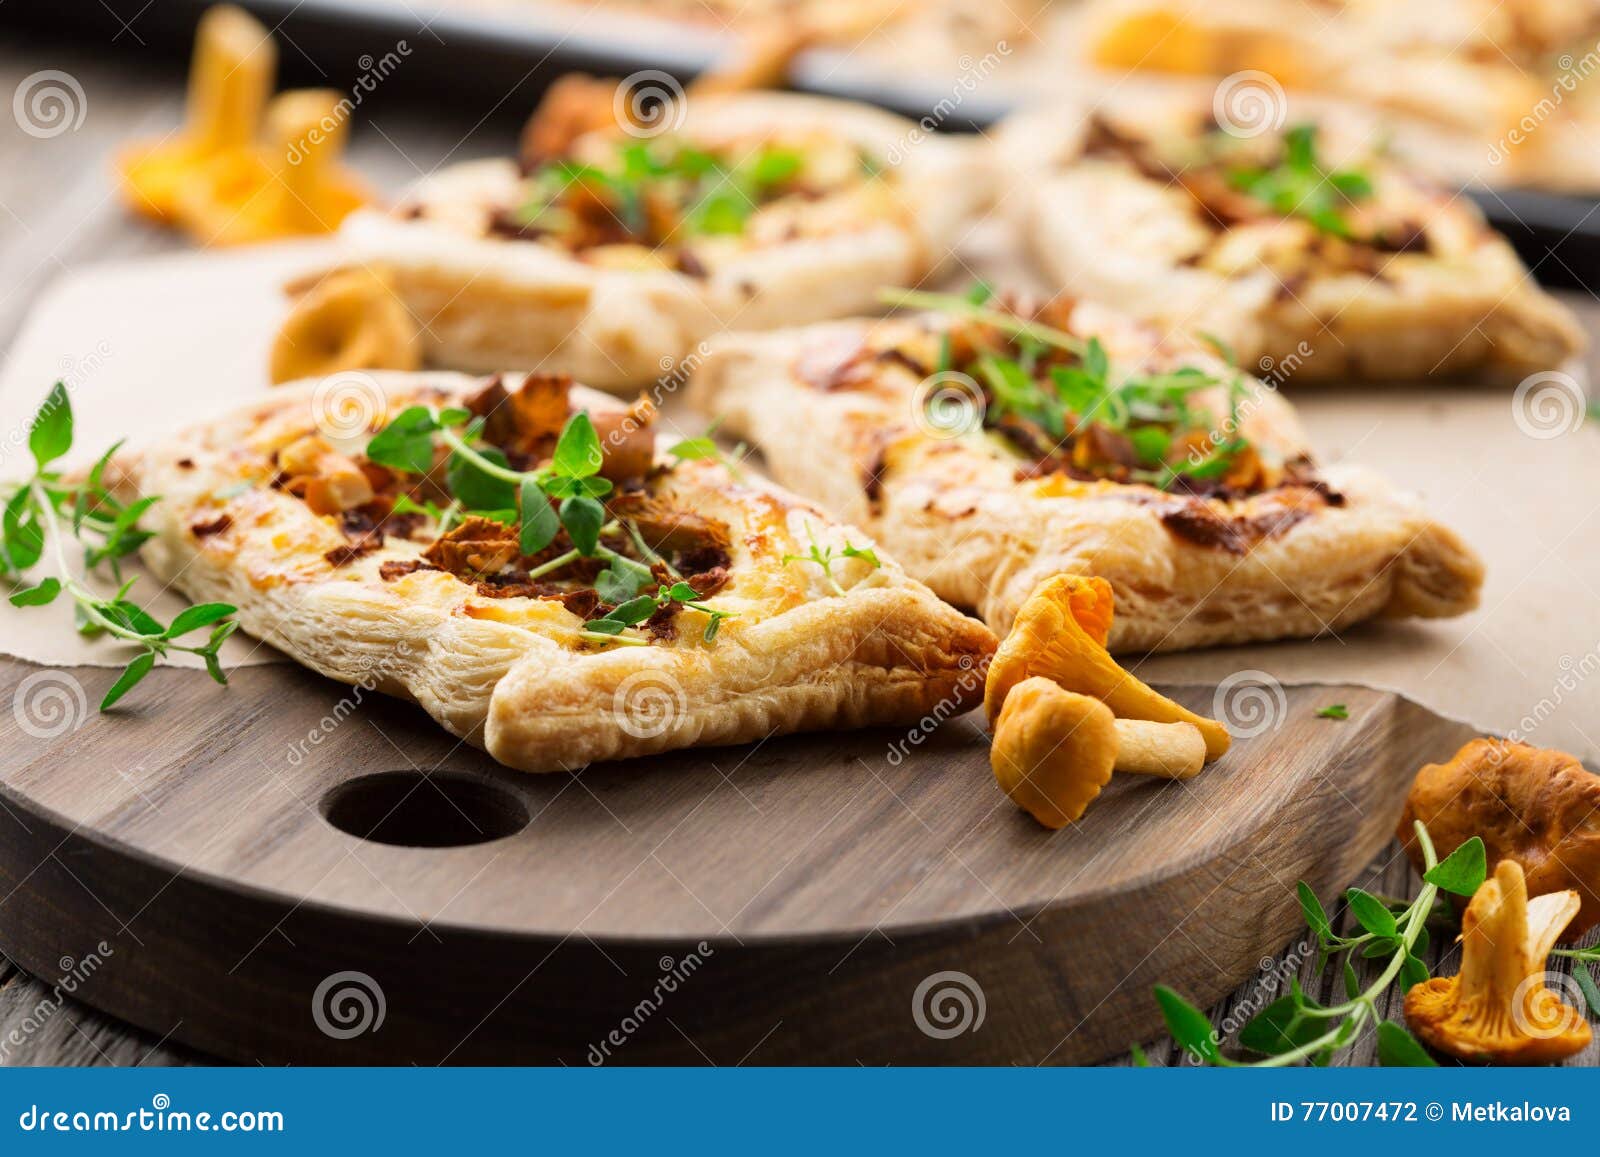 пицца с лисичками рецепт с фото пошагово фото 37